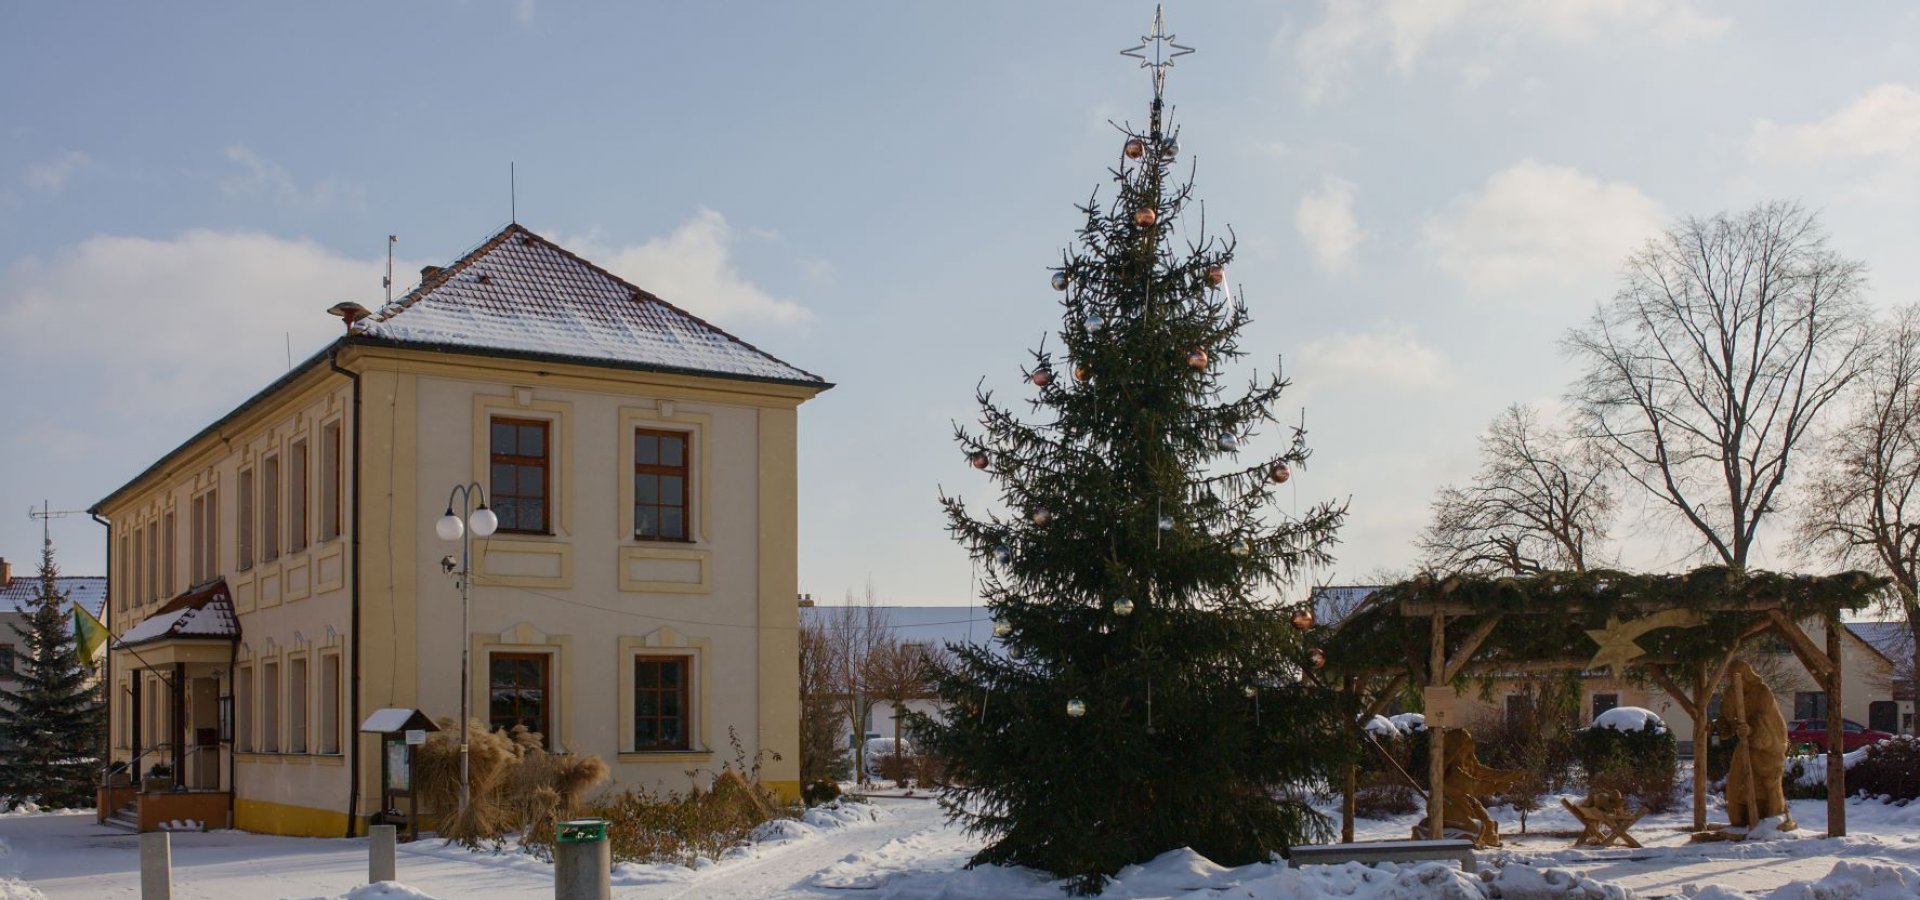 Budova obecního úřadu s vánočním stromem